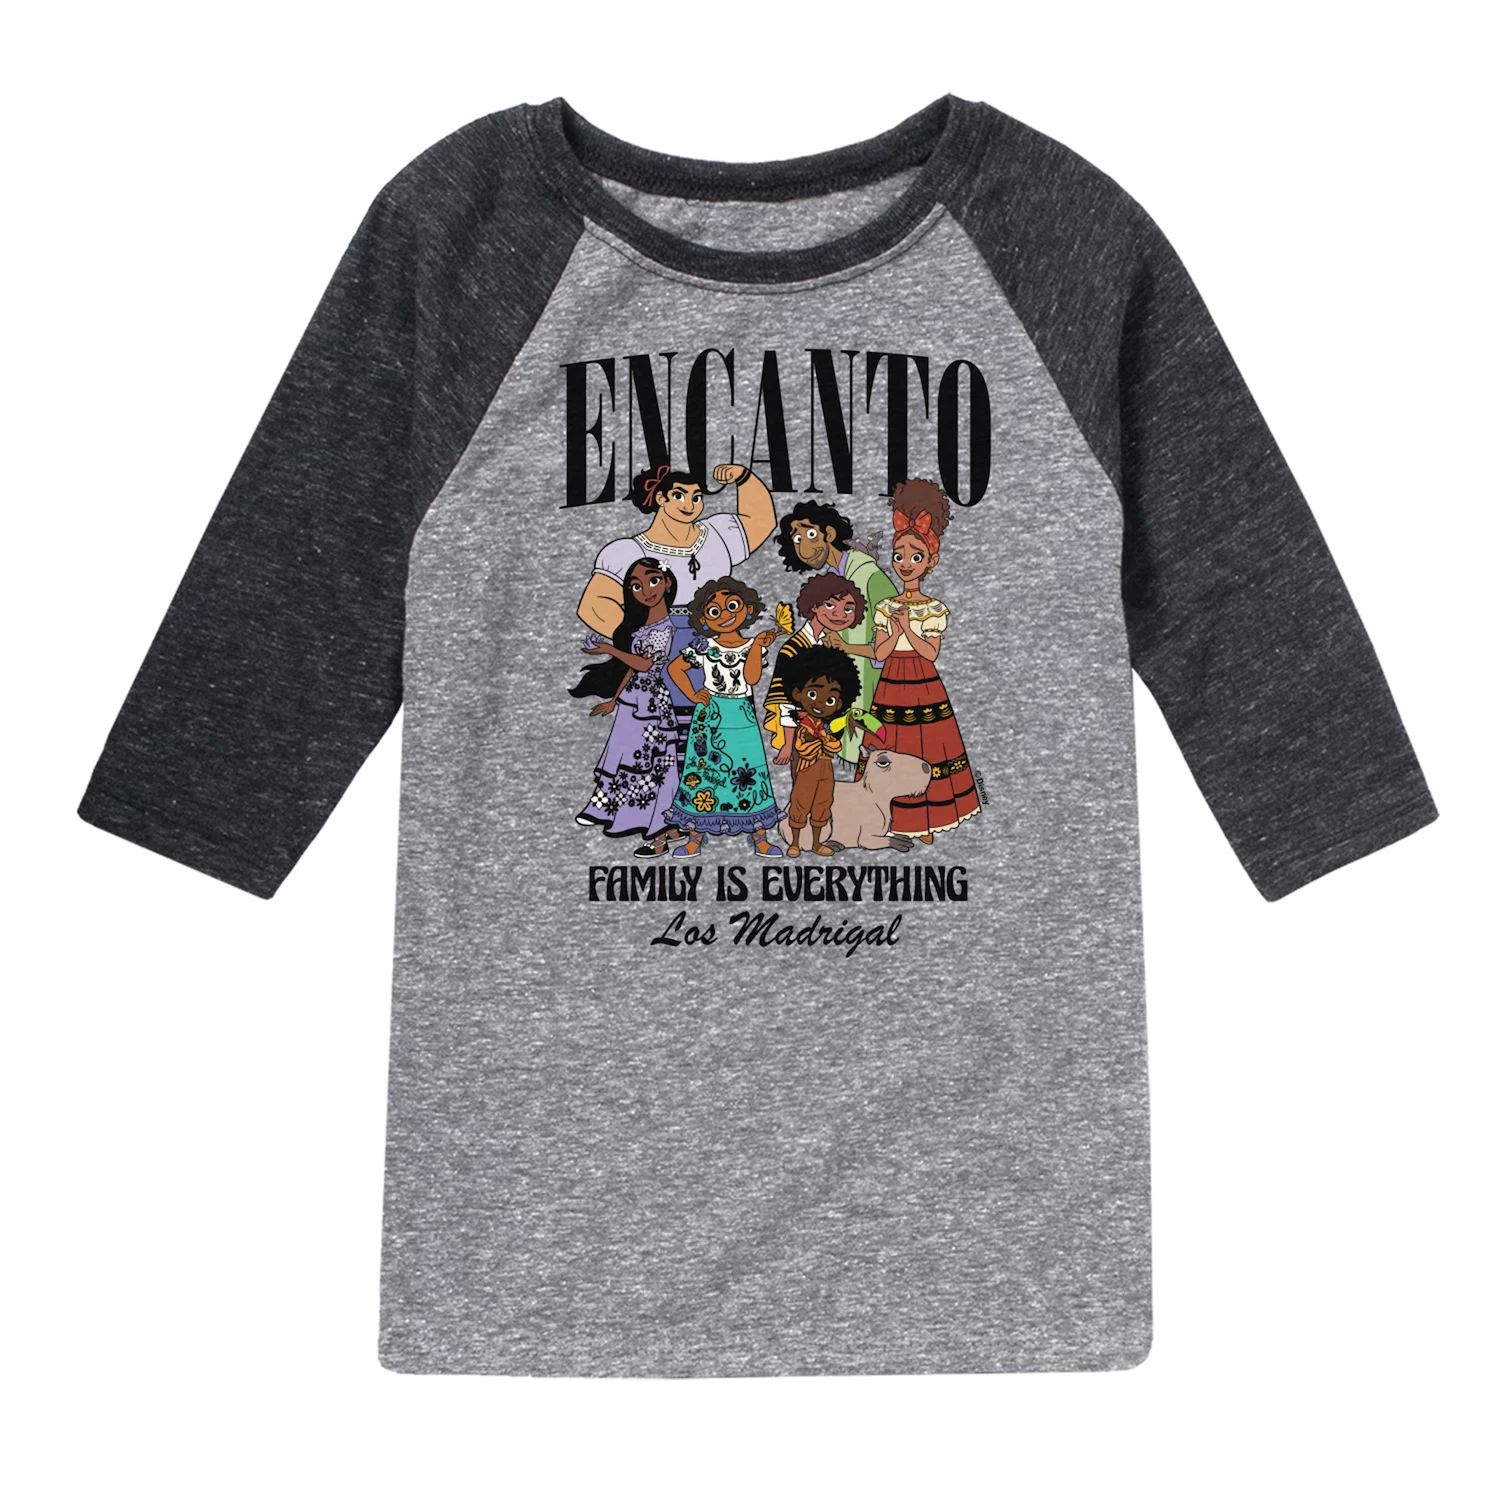 

Футболка Disney's Encanto с рисунком реглан для мальчиков 8–20 лет Family Everything Disney, серый